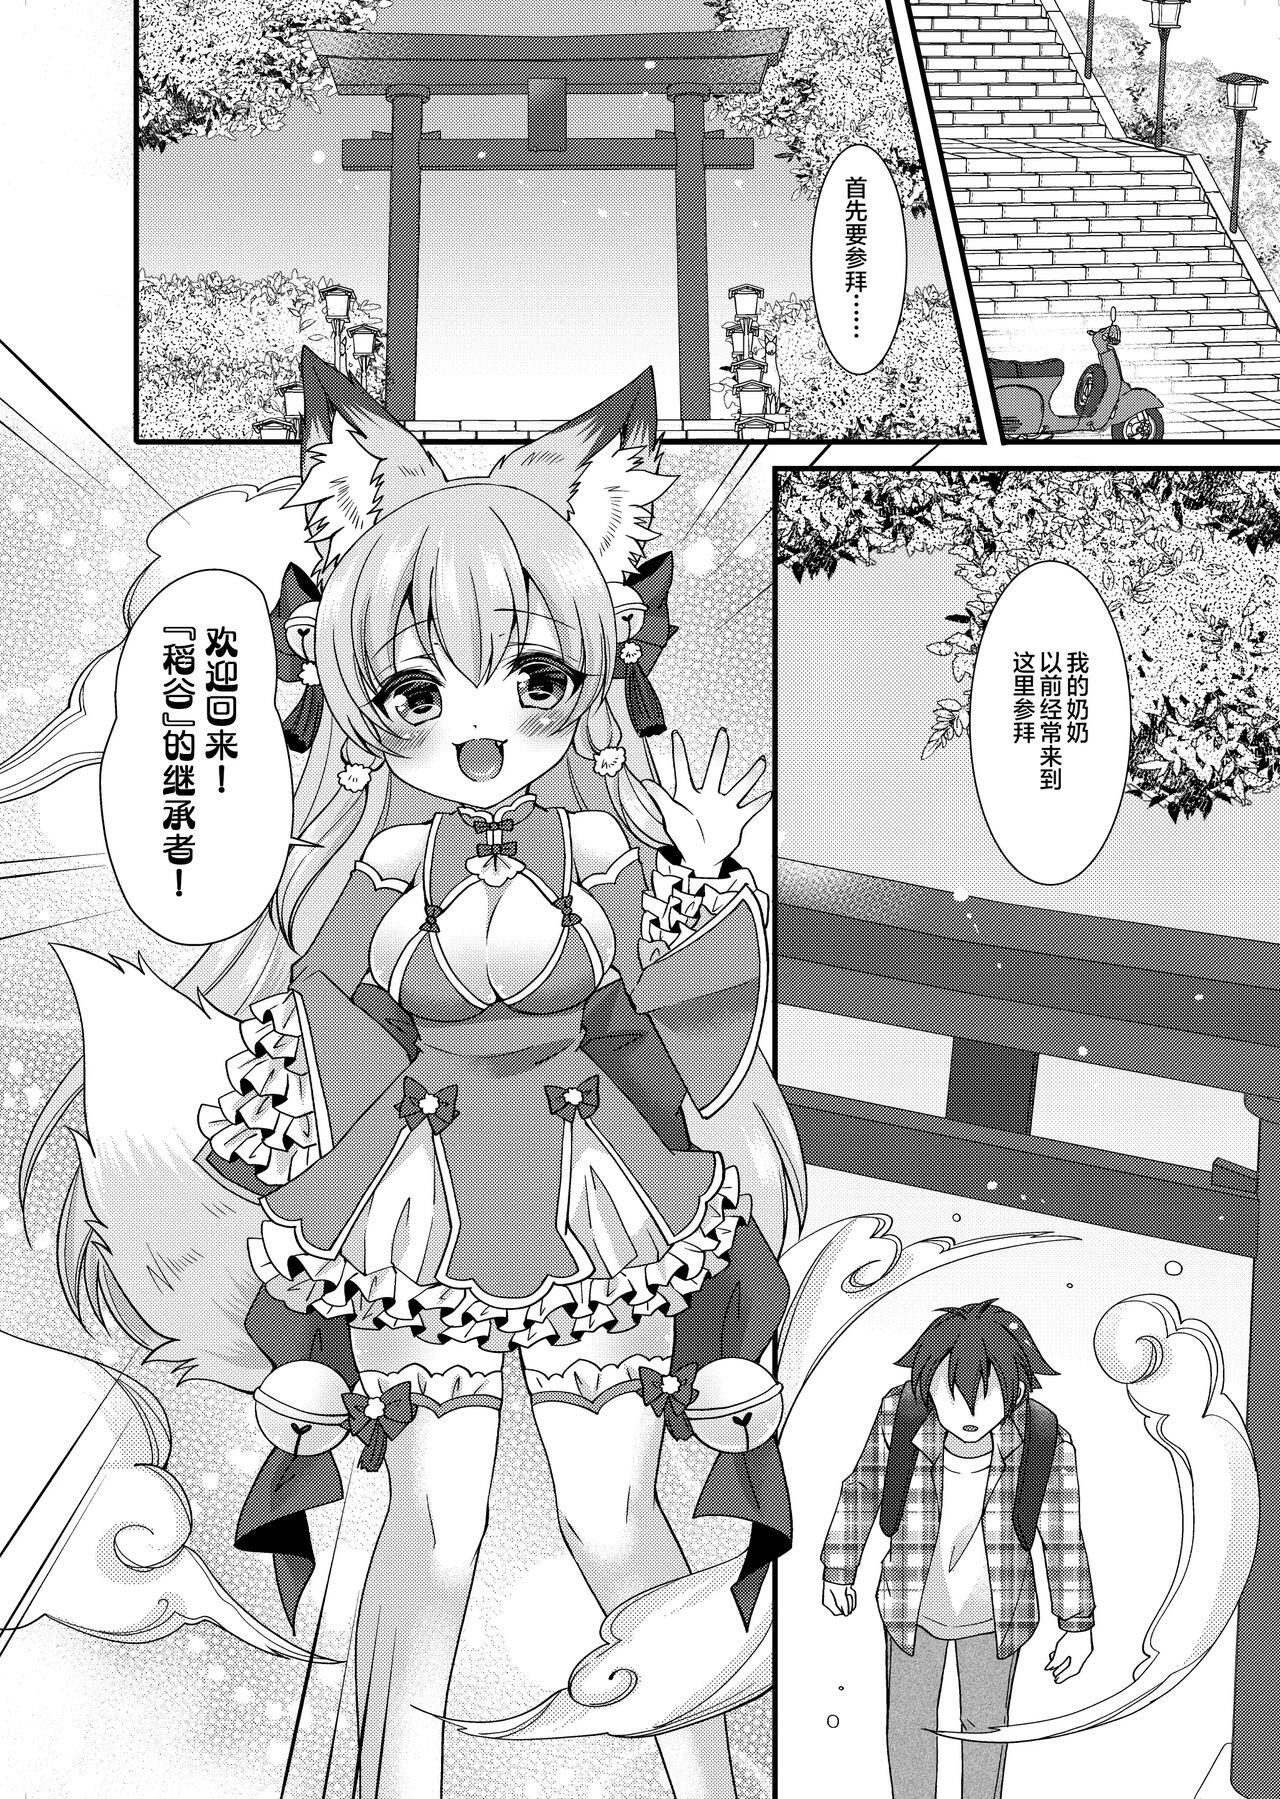 Hardcorend Yukemuri Konkon U-turn! - Original Stockings - Page 3